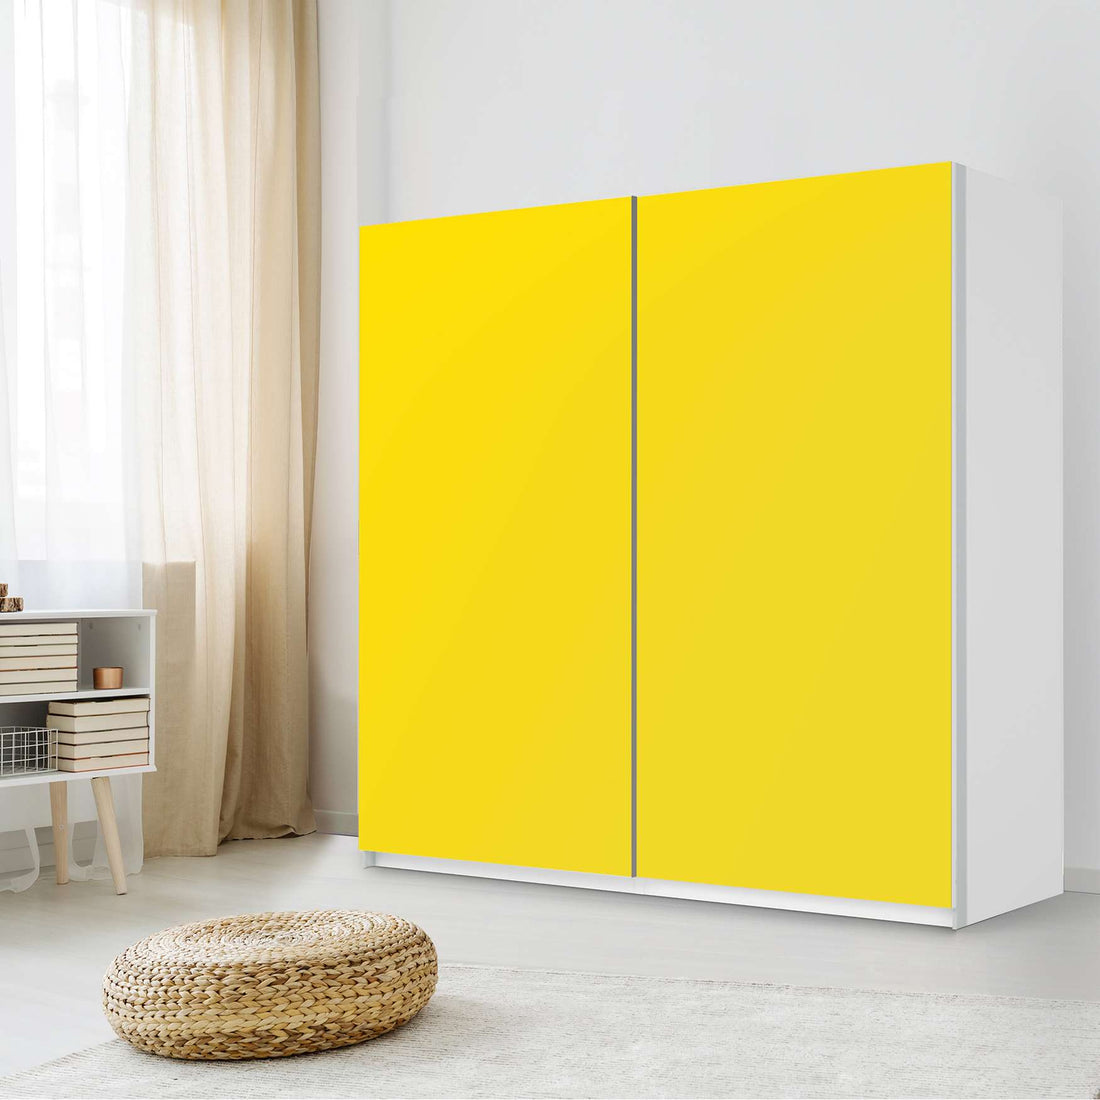 Möbel Klebefolie Gelb Dark - IKEA Pax Schrank 201 cm Höhe - Schiebetür - Schlafzimmer